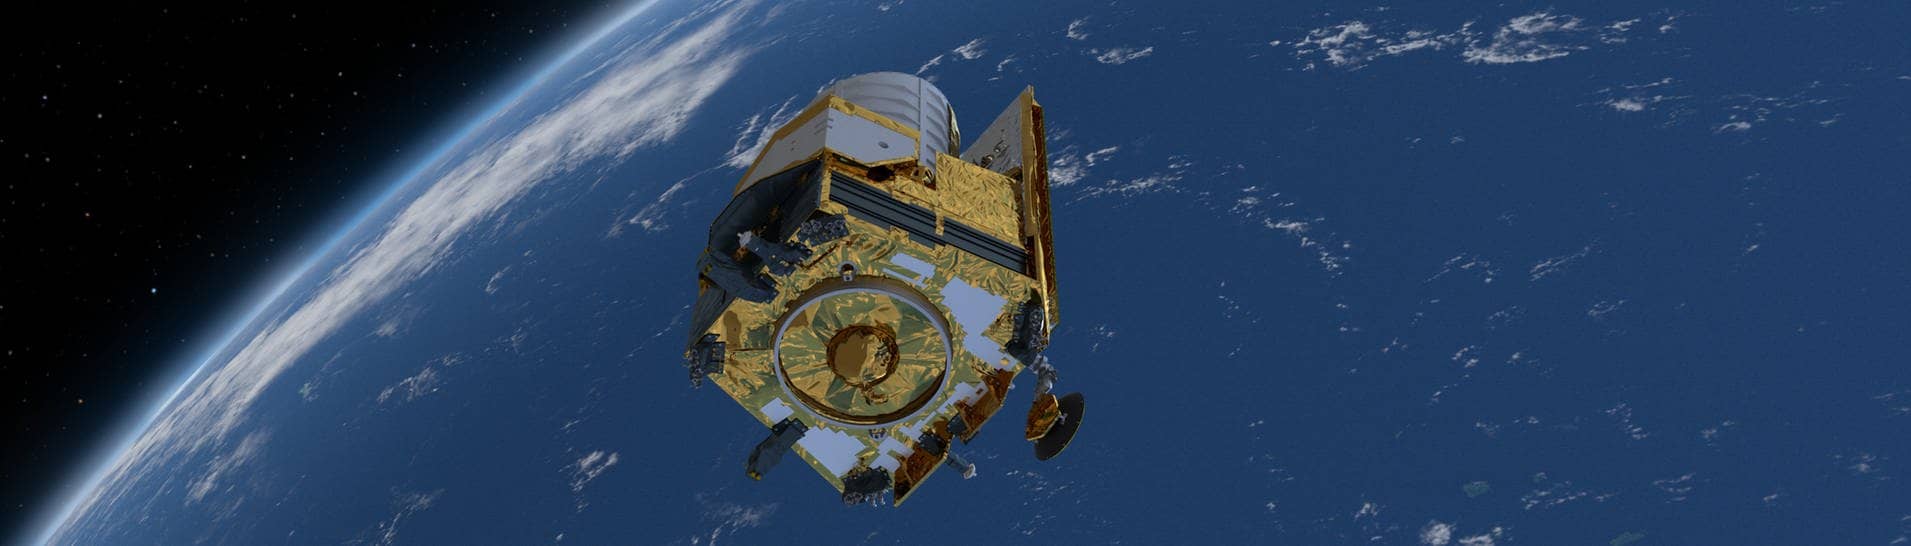 Computergeneriertes Bild des Weltraumteleskops Euclid. Zur Erforschung von Dunkler Materie und Dunkler Energie will die europäische Raumfahrtagentur Esa die Sonde Euclid ins Weltall schicken.